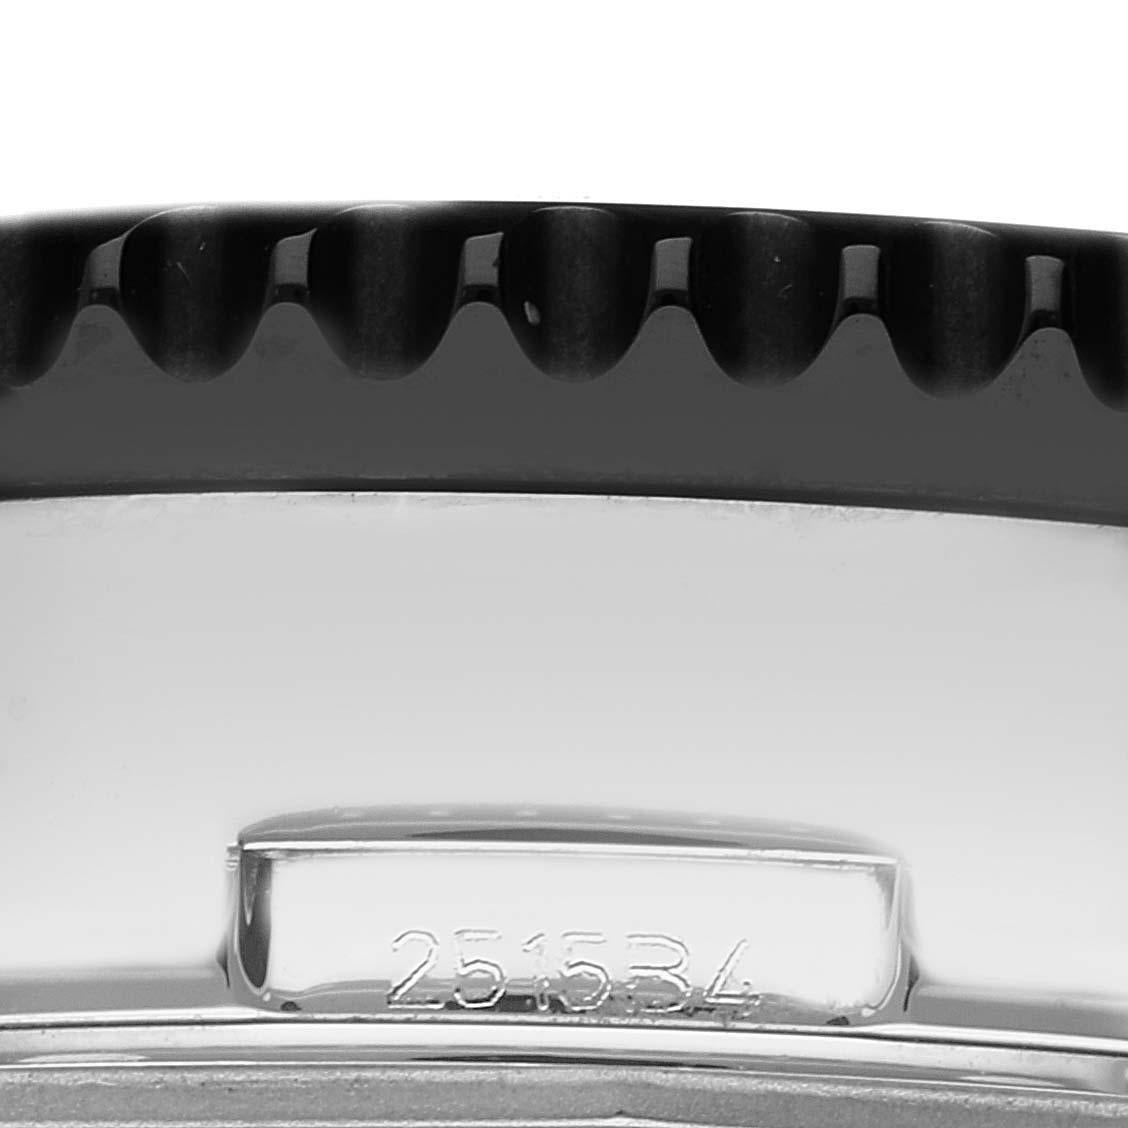 Montre Breitling Chronoliner Black Dial Steel Mens Watch Y24310 Box Card. Mouvement automatique à remontage automatique, officiellement certifié chronomètre. Fonction chronographe. Boîtier en acier inoxydable de 46 mm de diamètre. Logo Breitling sur